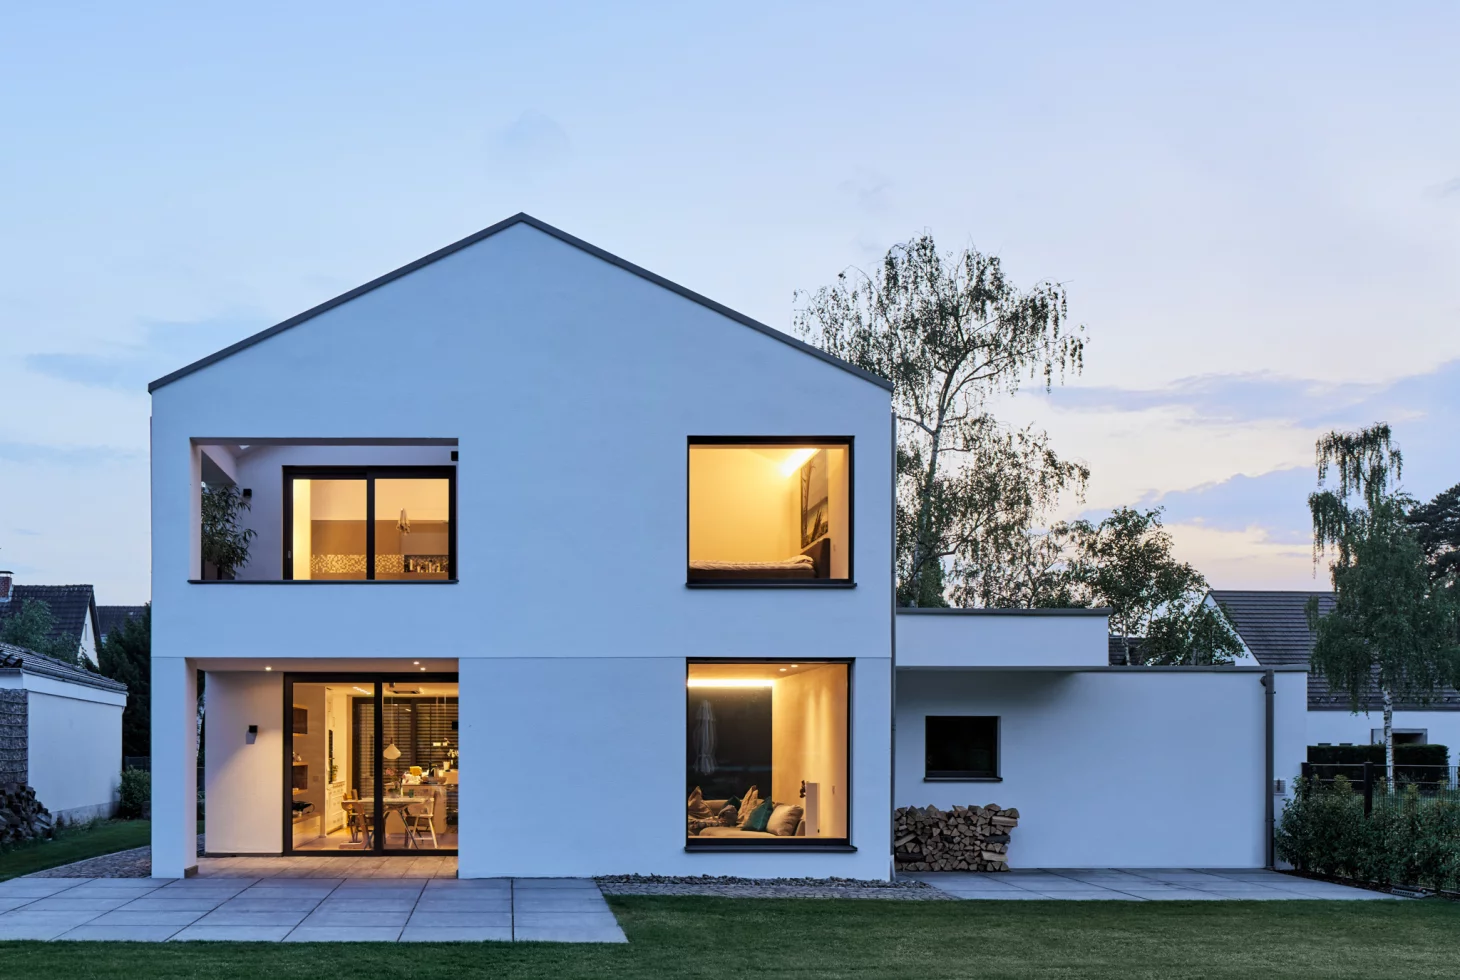 Ansicht der Giebelseite eines minimalistischen, weiss verputzten Einfamilienhauses mit markanten Öffnungen